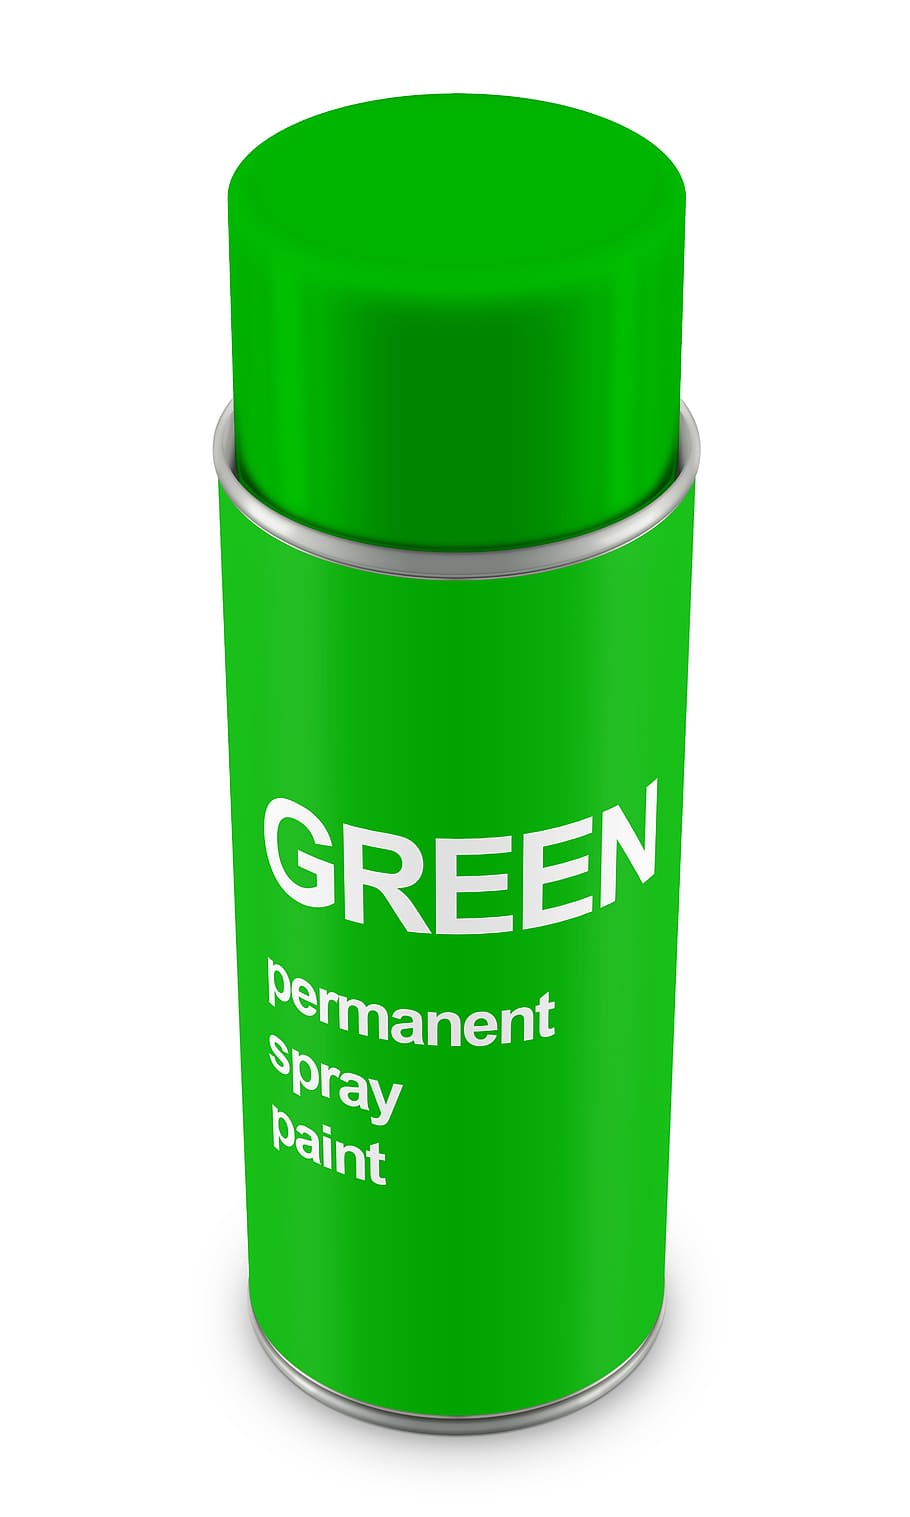 lata de aerosol, pintura, estaño, aerosol, botella, contenedor, bote, artístico, verde, color verde